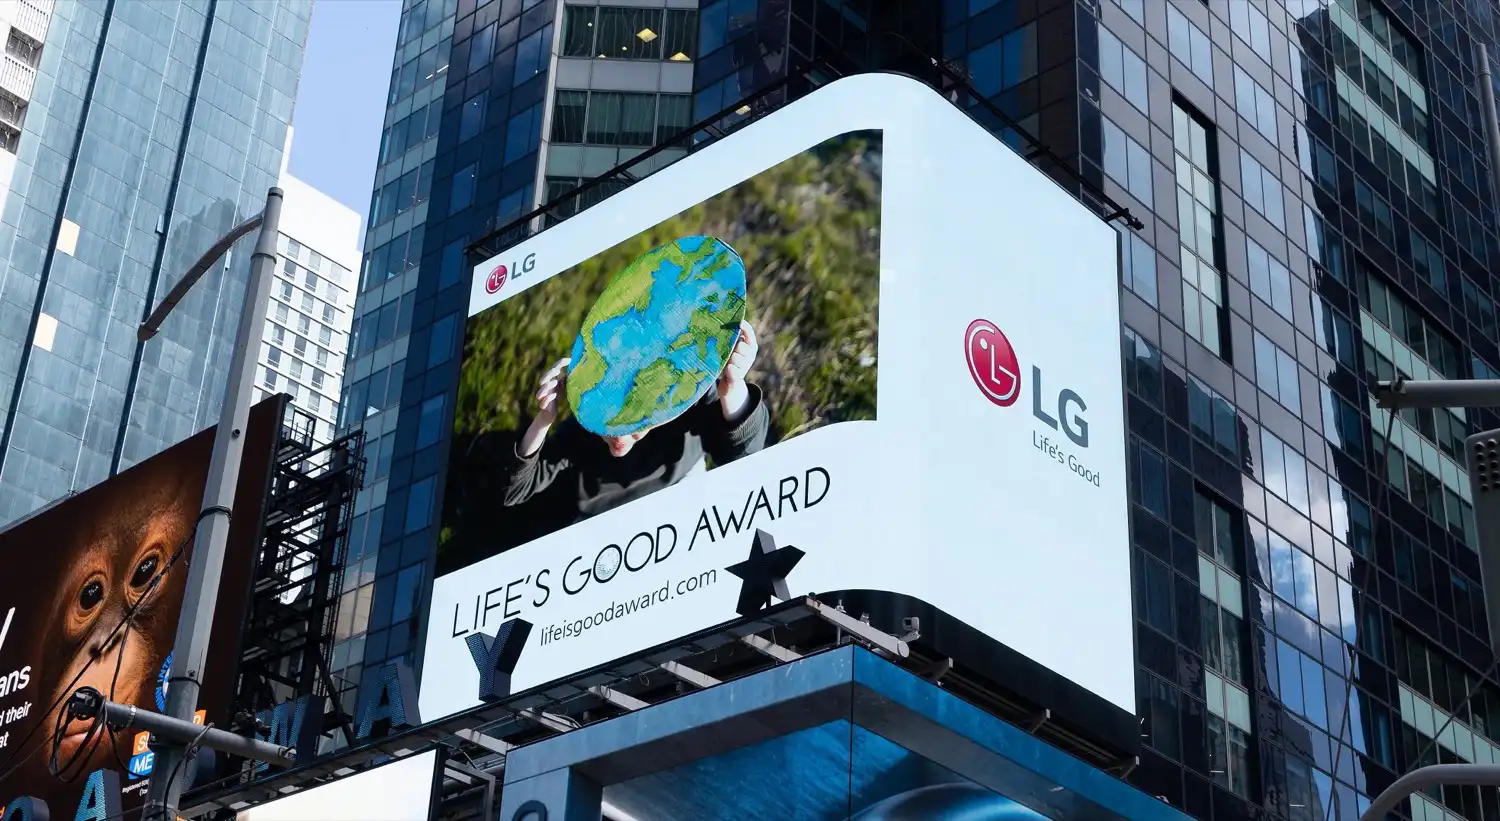 LG busca proyectos innovadores, dignos del premio "Life's Good"